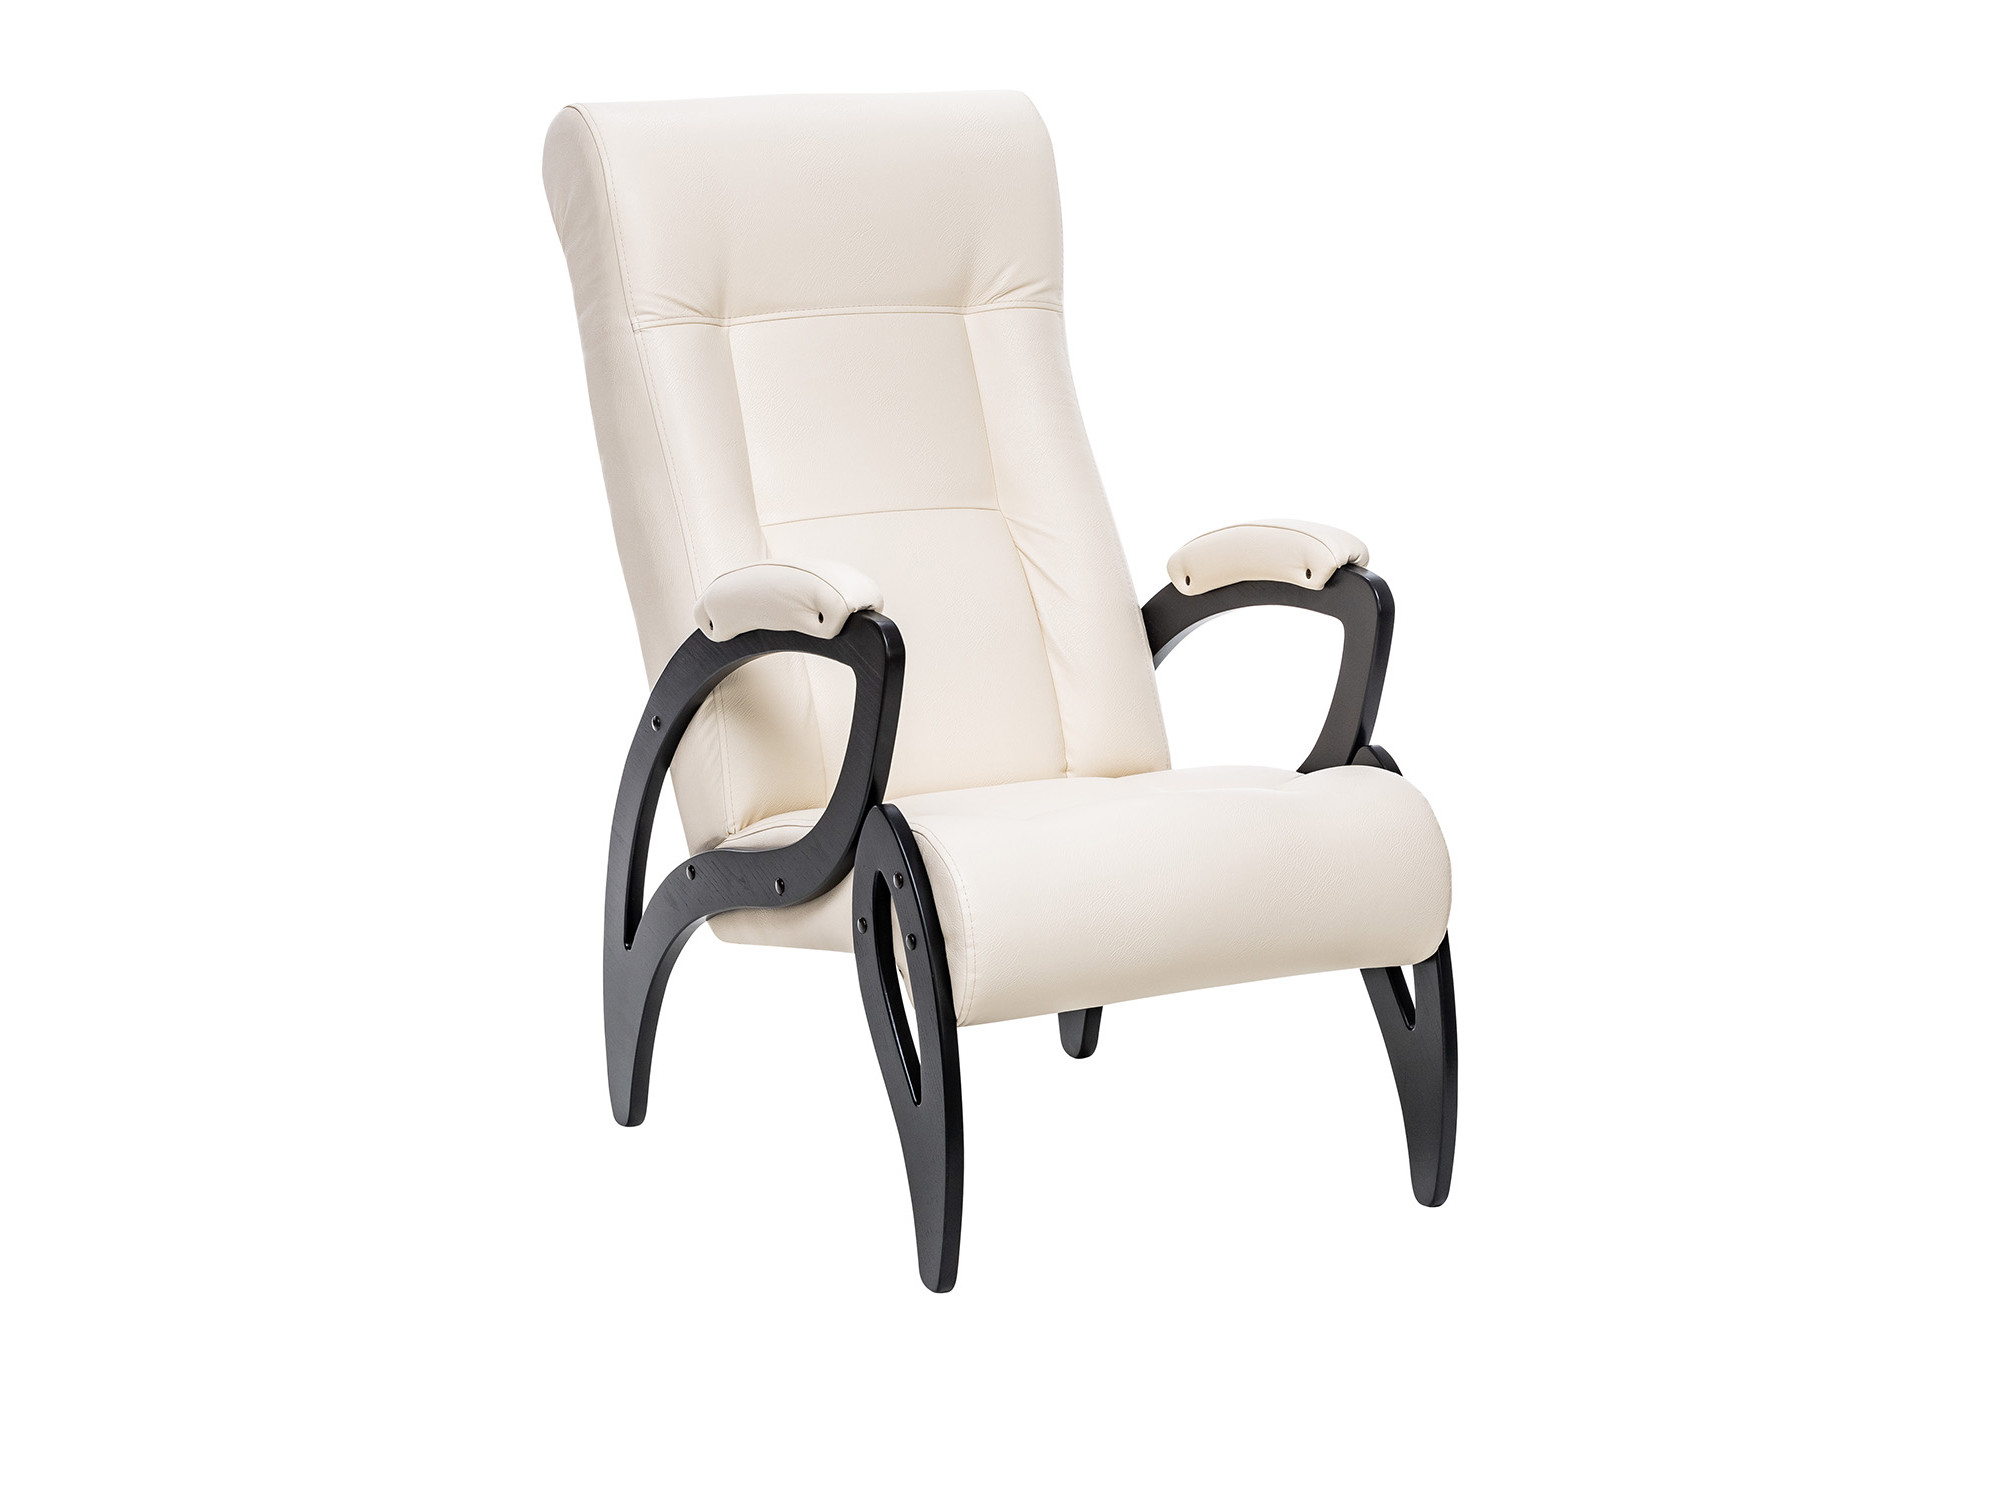 Кресло для отдыха Модель 51 MebelVia Dundi 112, Экокожа, Шпон, Лак, Фанера кресло качалка модель 67 венге к з oregon perlamutr 120 mebelvia oregon perlamutr 120 экокожа фанера шпон лак